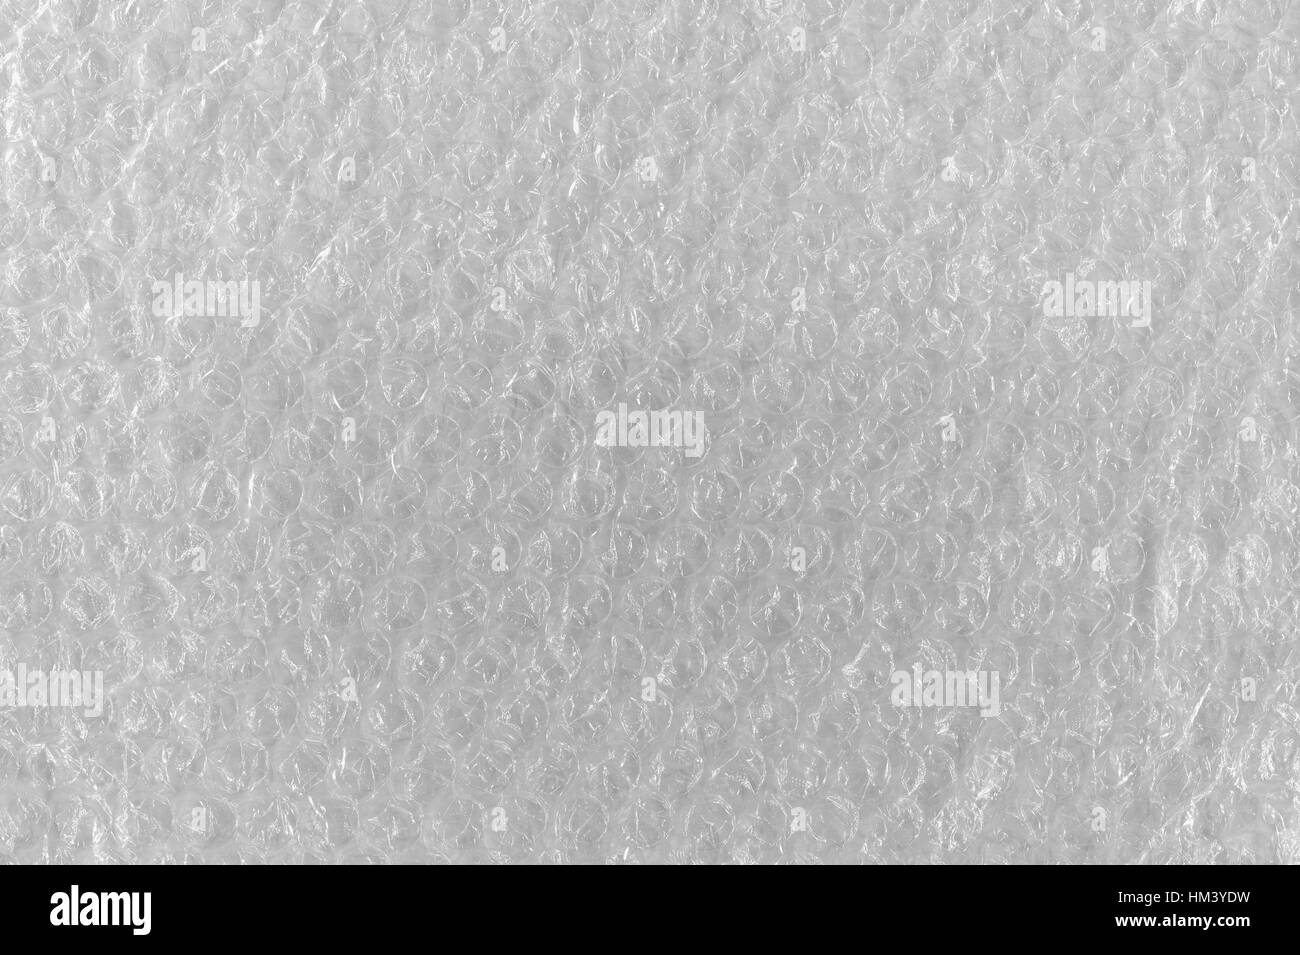 Bubble Wrap Texture di sfondo astratto, a trama dettagliata Horizontal Macro Closeup, luminoso modello di bianco in plastica trasparente bolle di aria bubblewrap Foto Stock